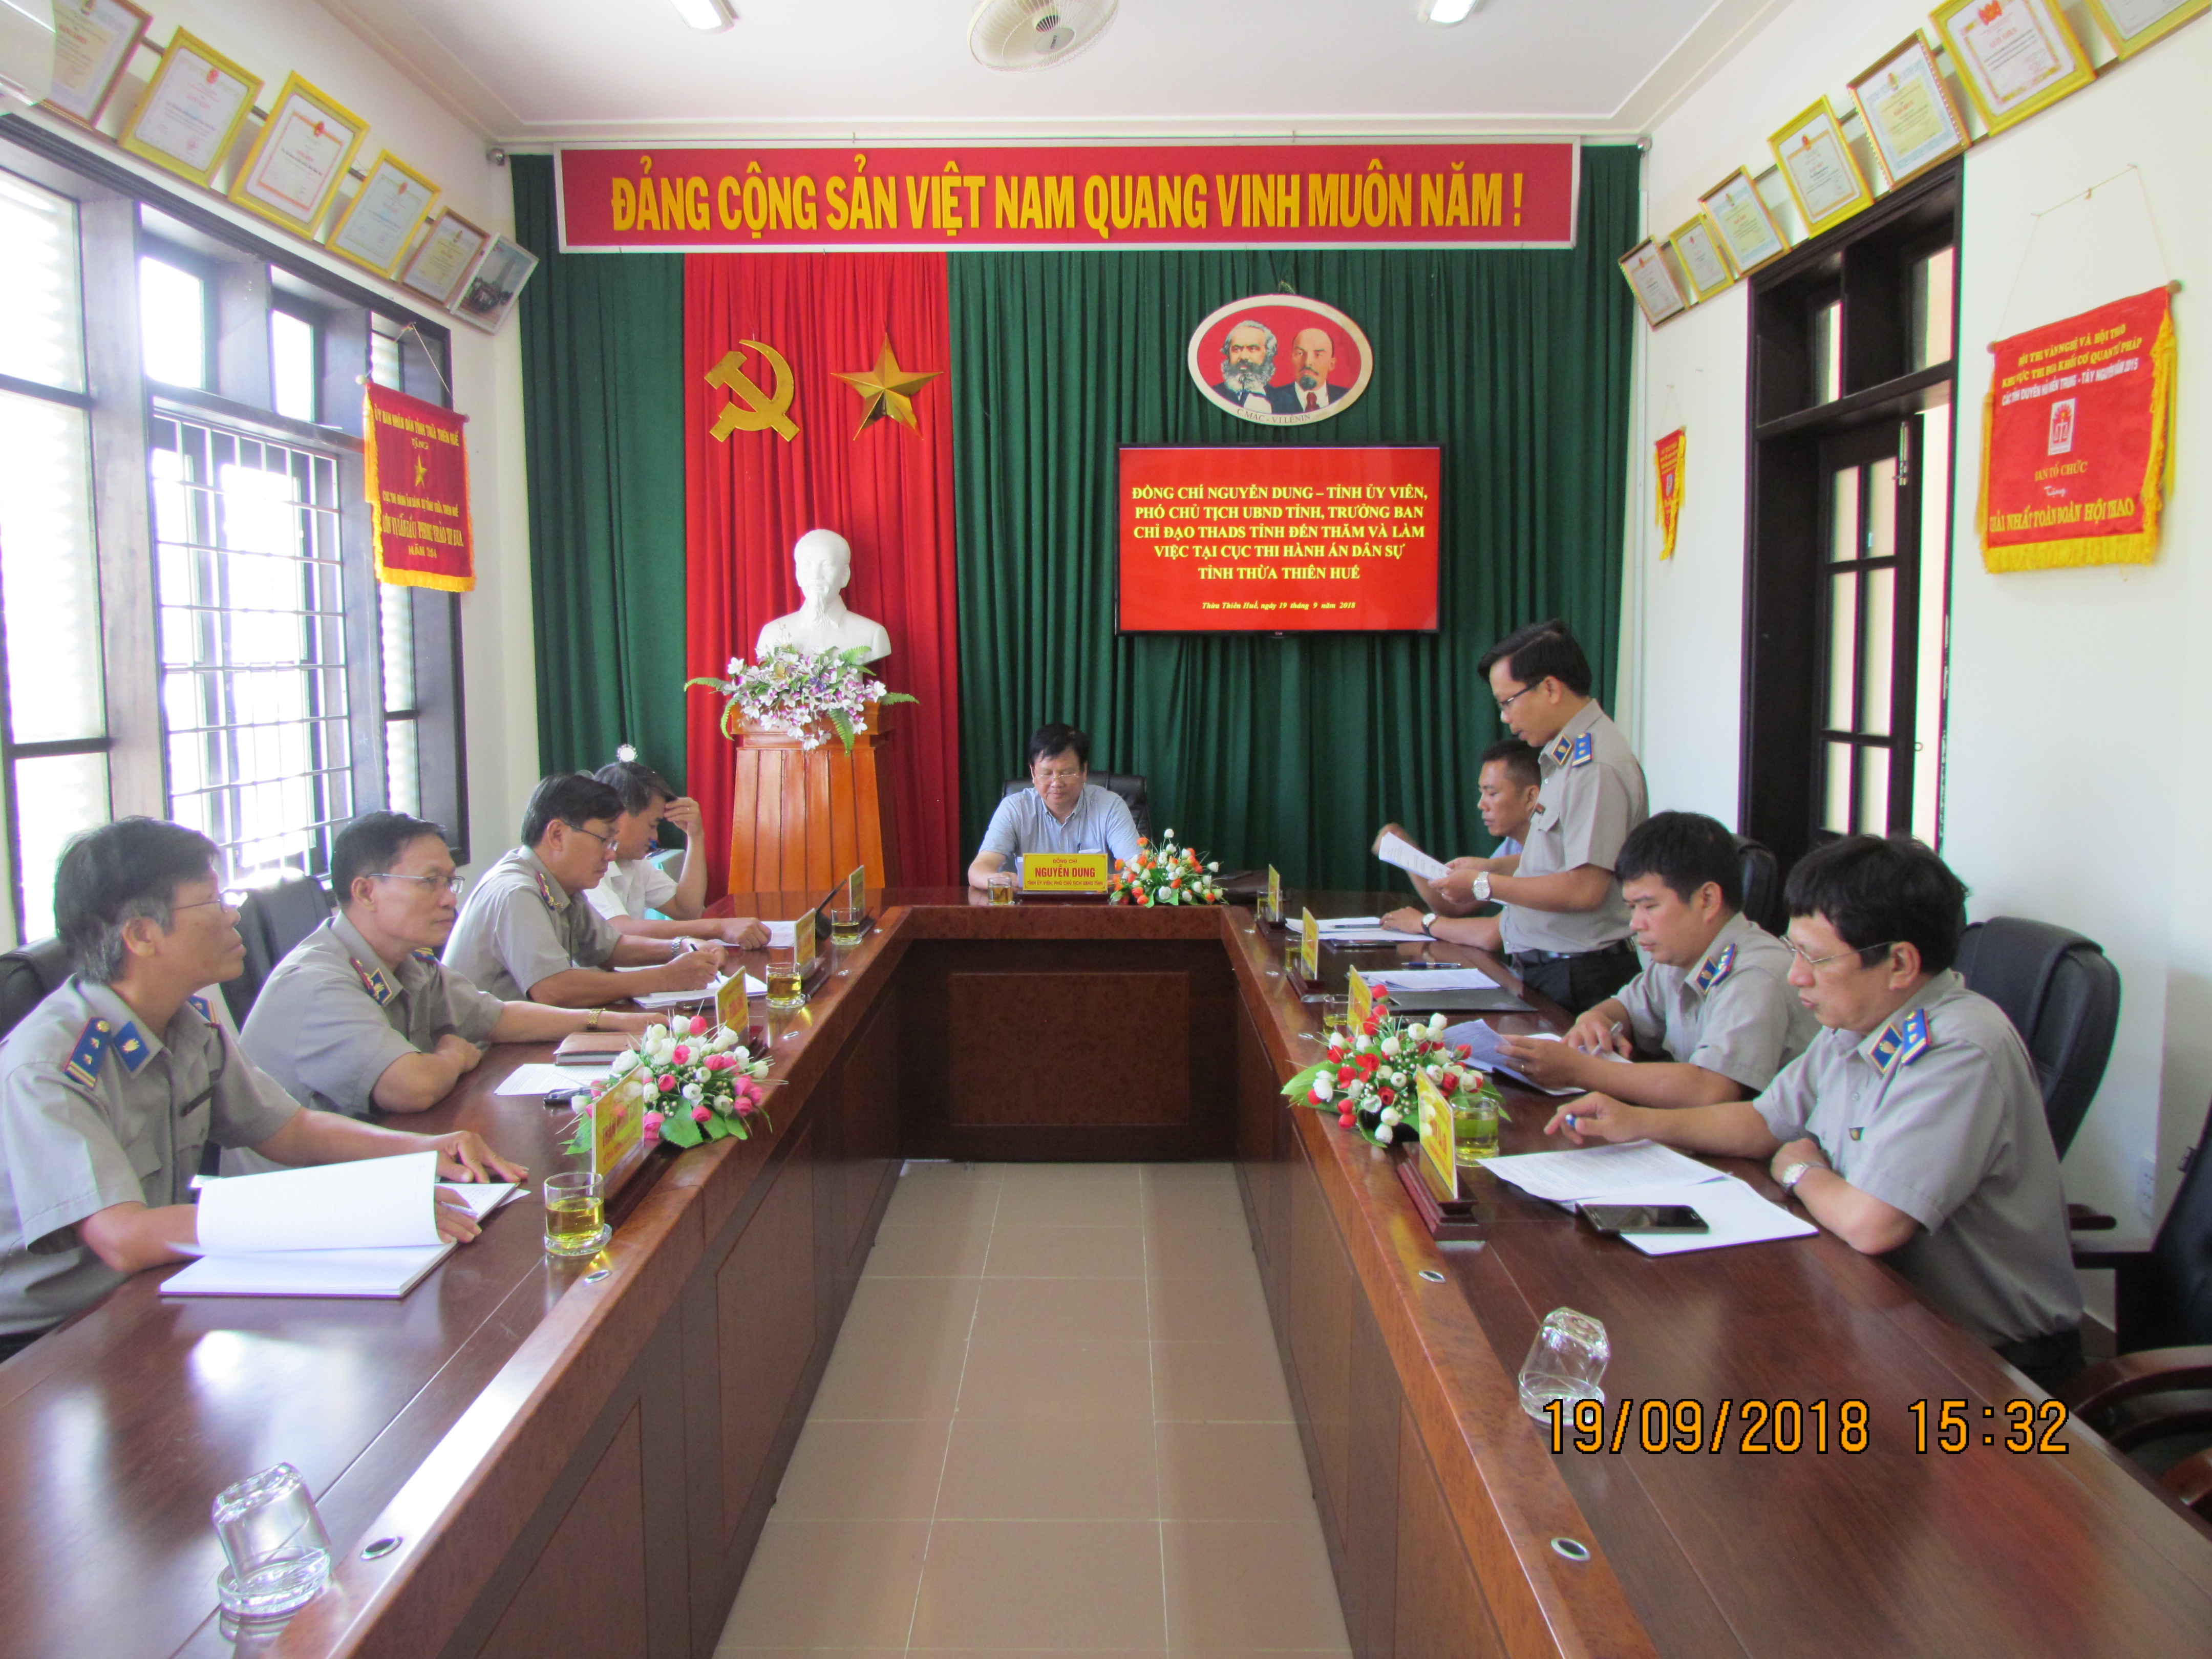 Phó Chủ tịch UBND tỉnh Nguyễn Dung làm việc tại Cục Thi hành án dân sự tỉnh Thừa Thiên Huế